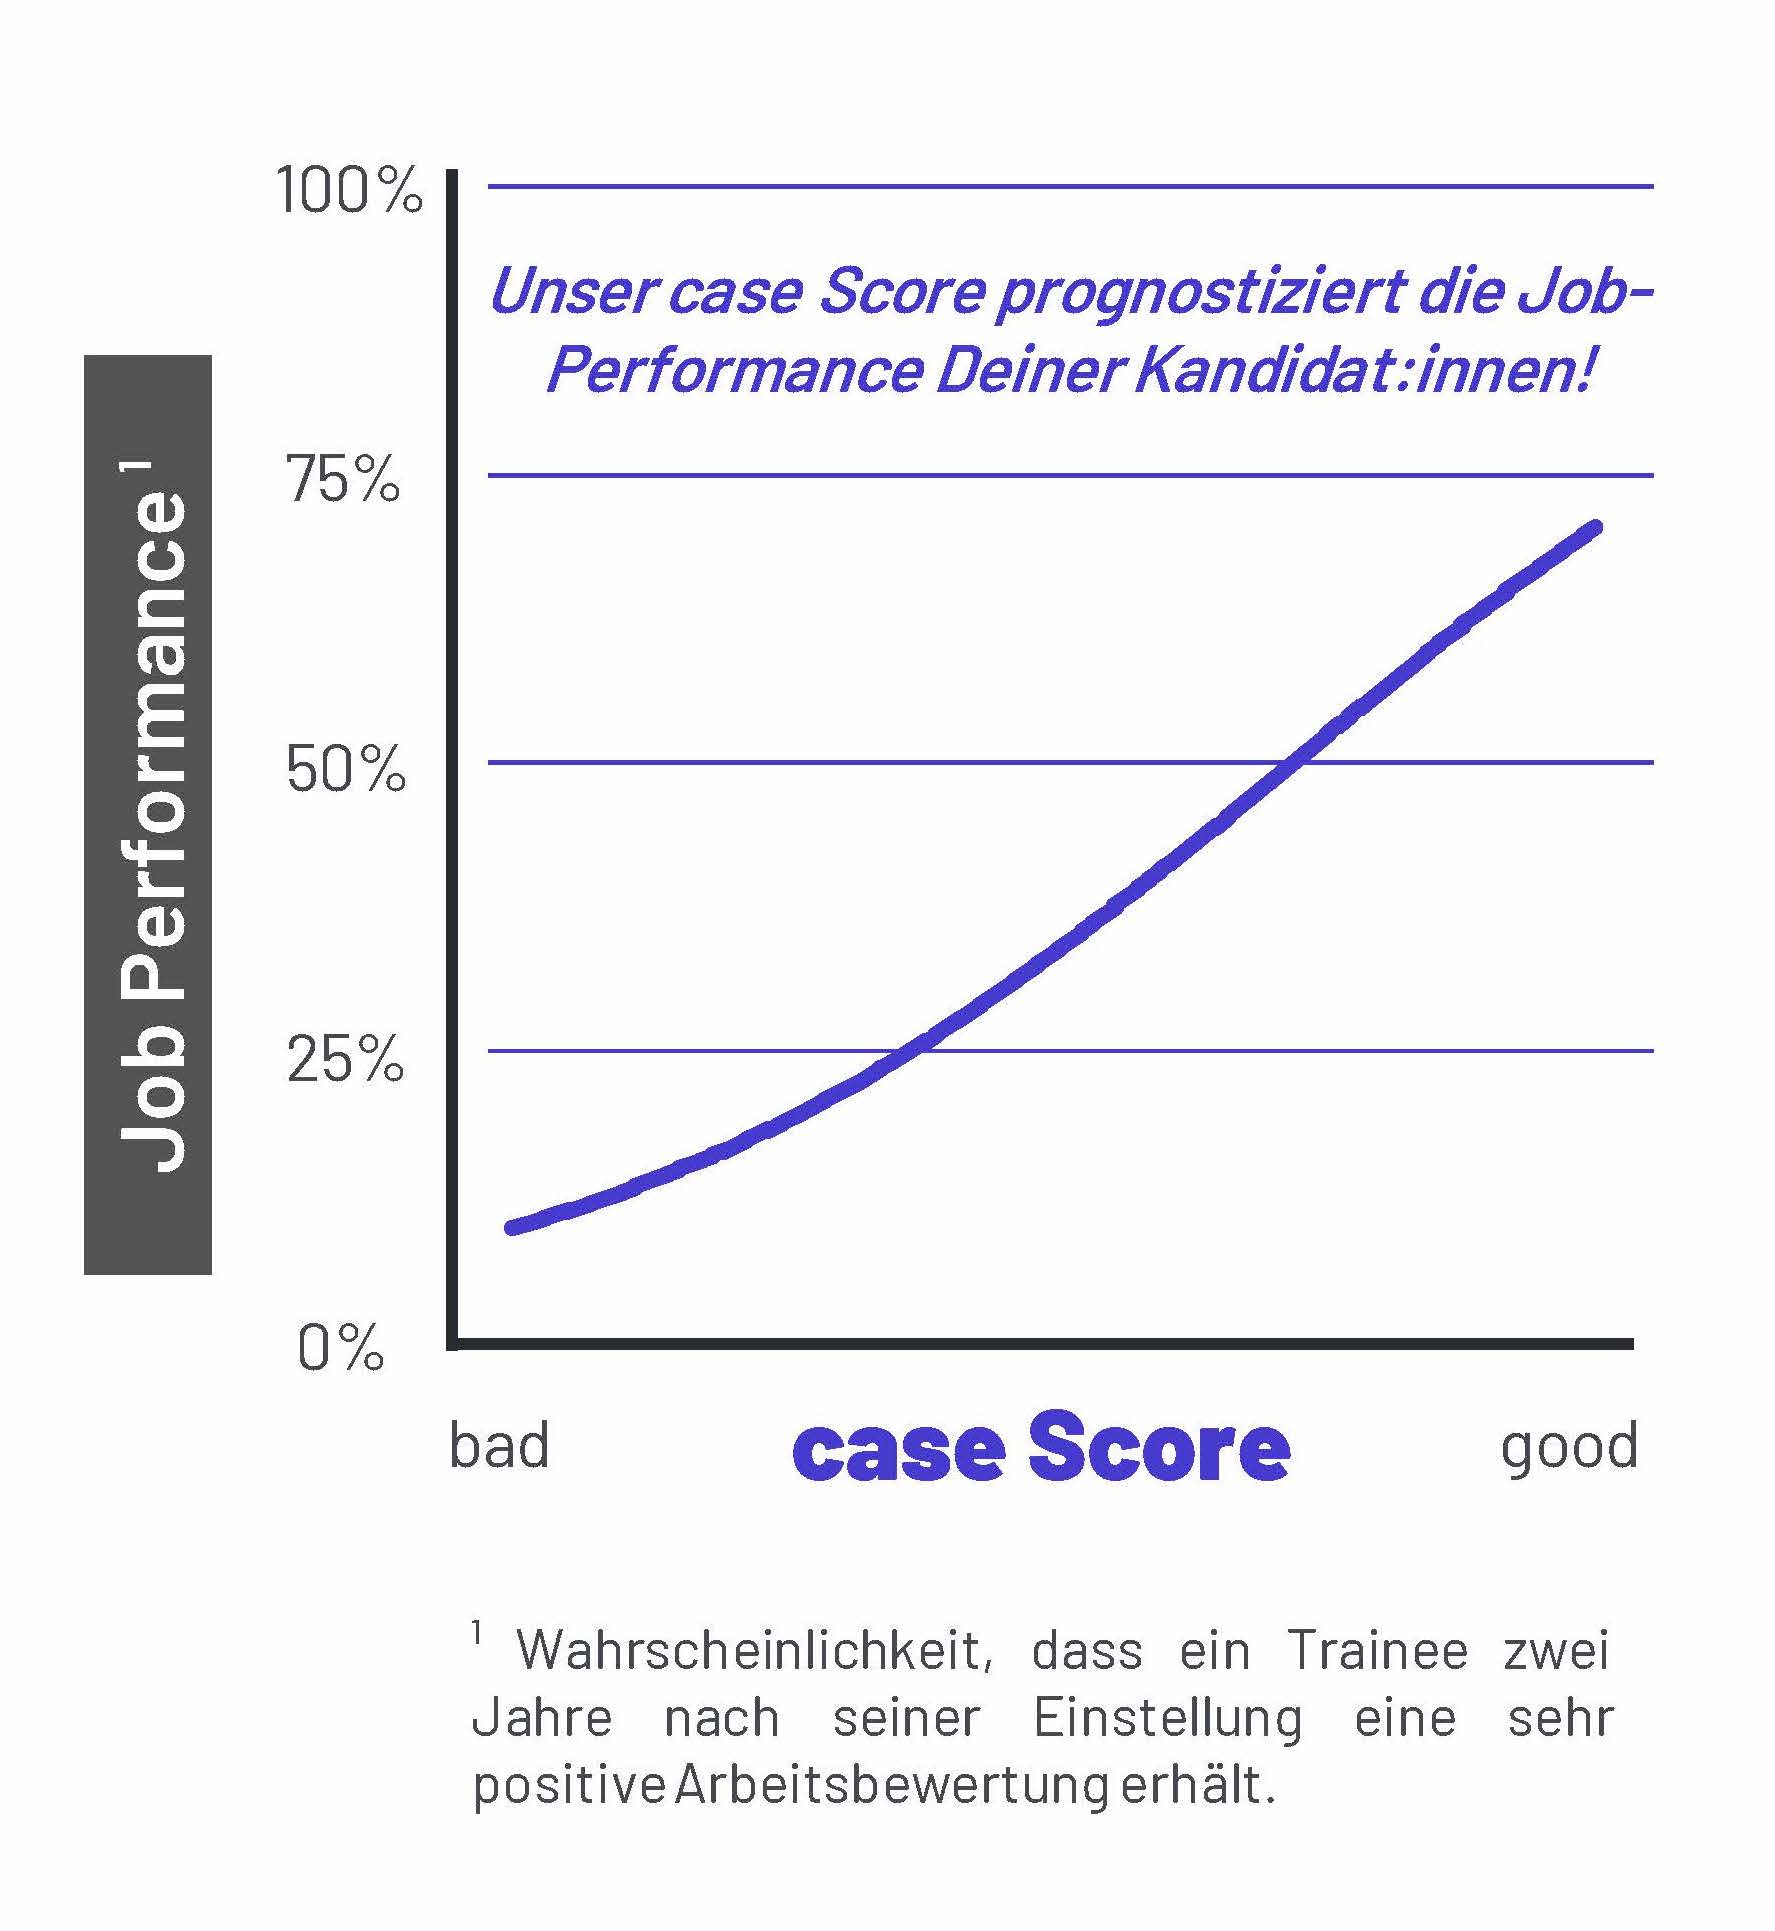 Unser Recruiting-Algorithmus prognostiziert die Job-Performance Deiner Kandidat:innen